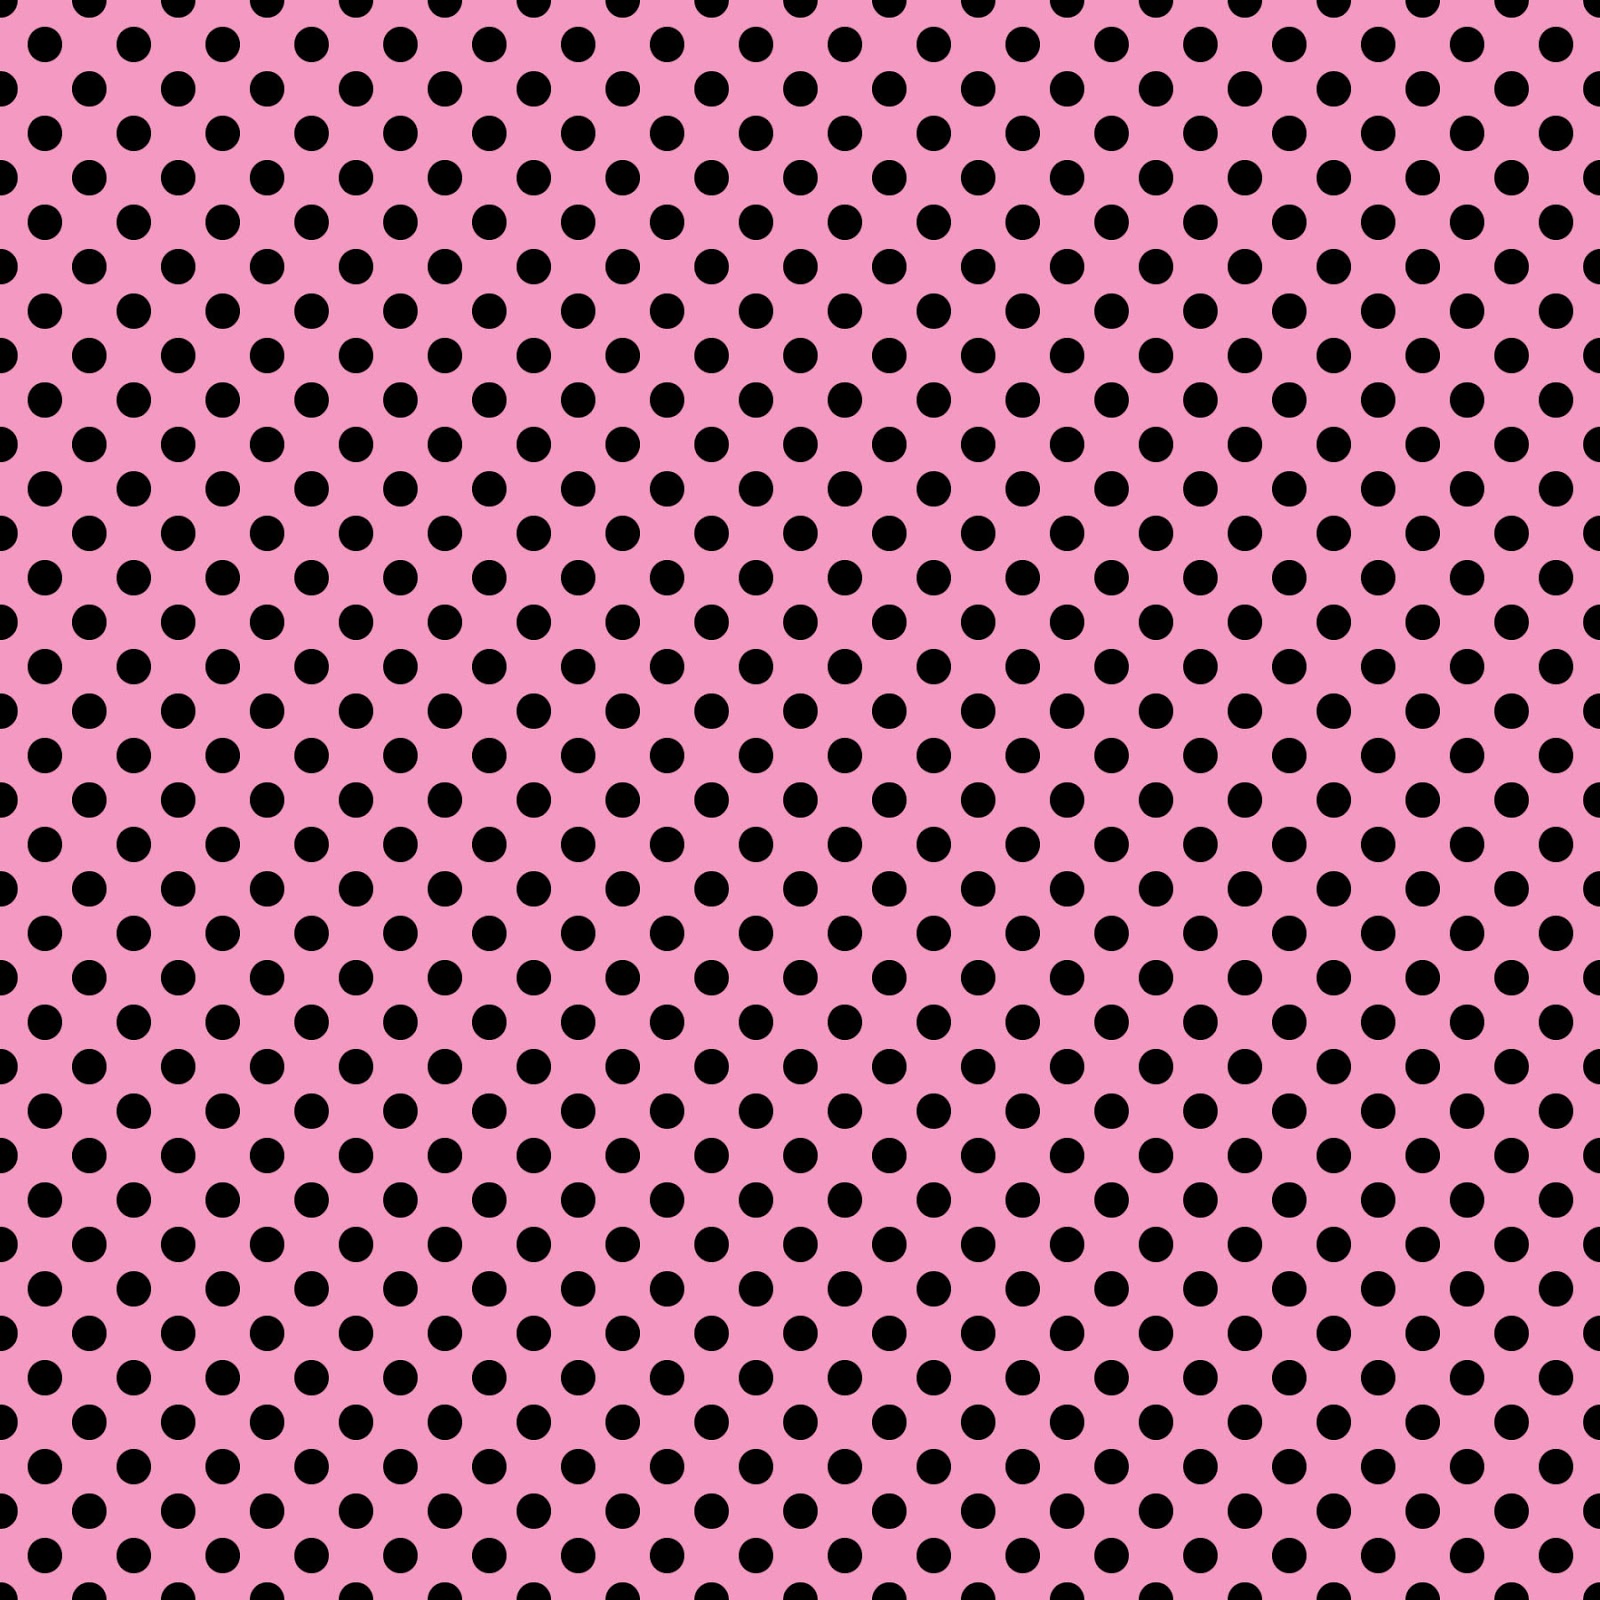 Polka Dot Wallpaper Black White - HD Wallpaper 